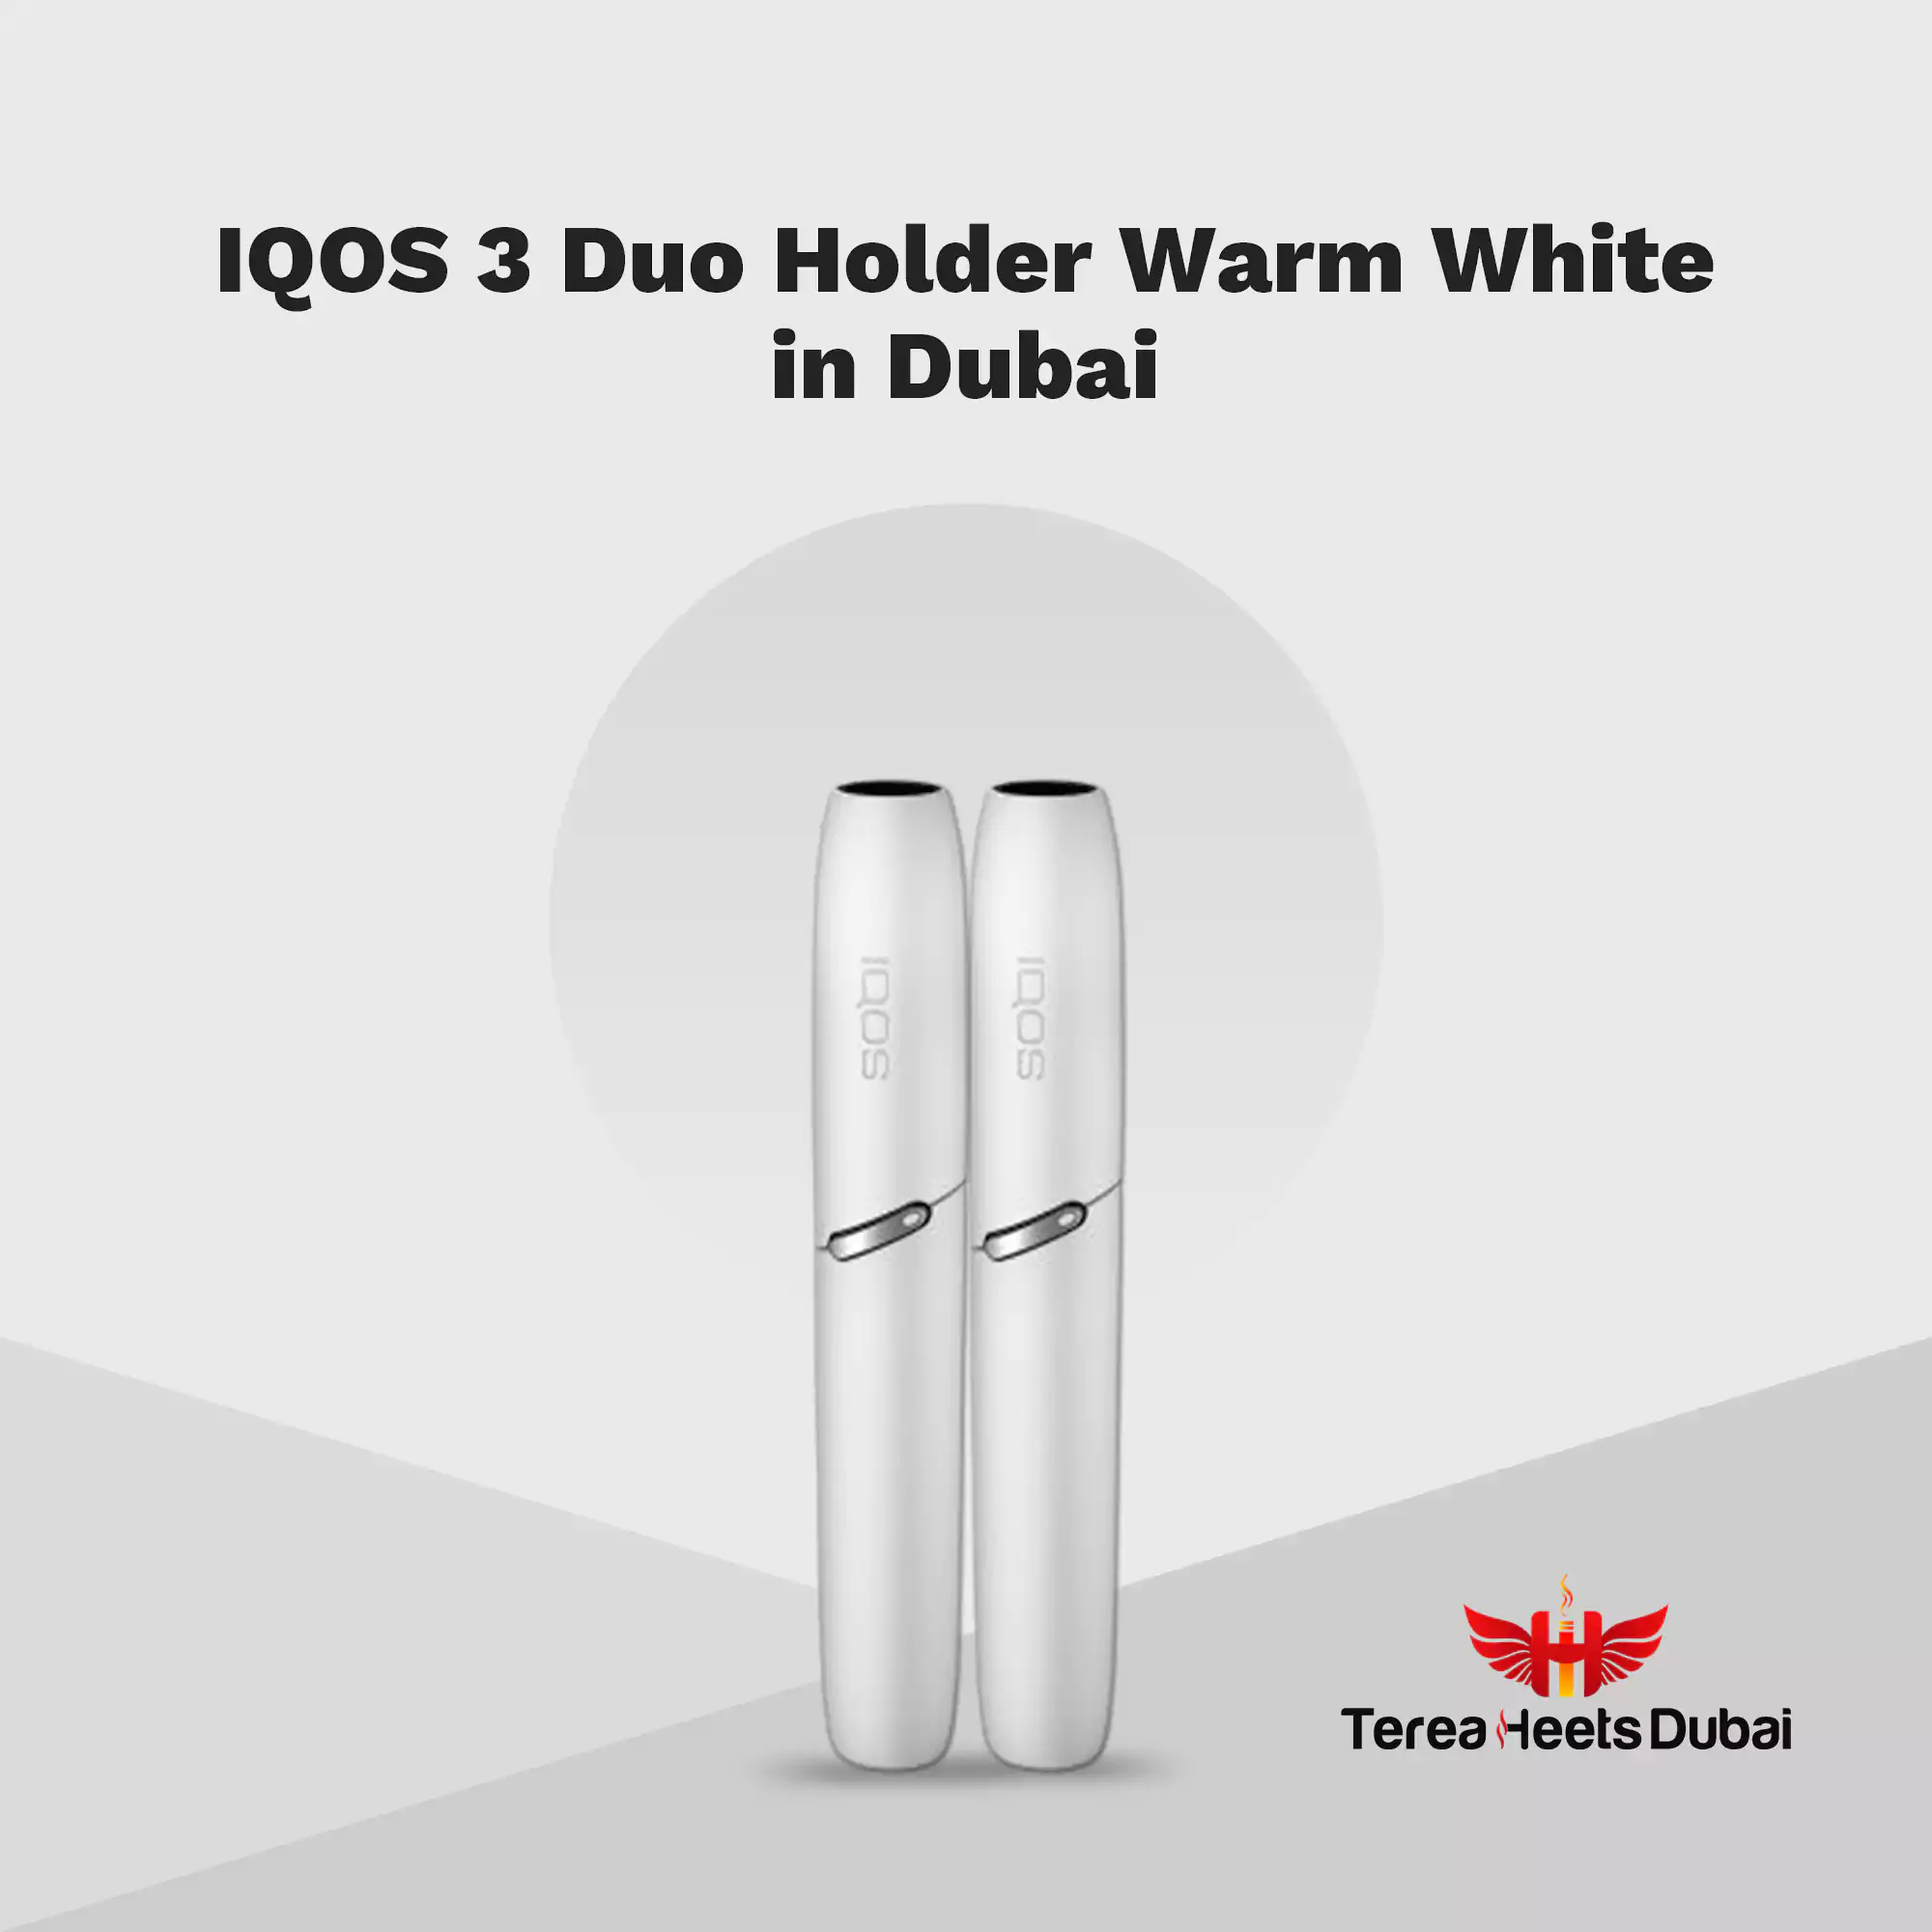 Best IQOS 3 Duo Holder Warm White in Dubai